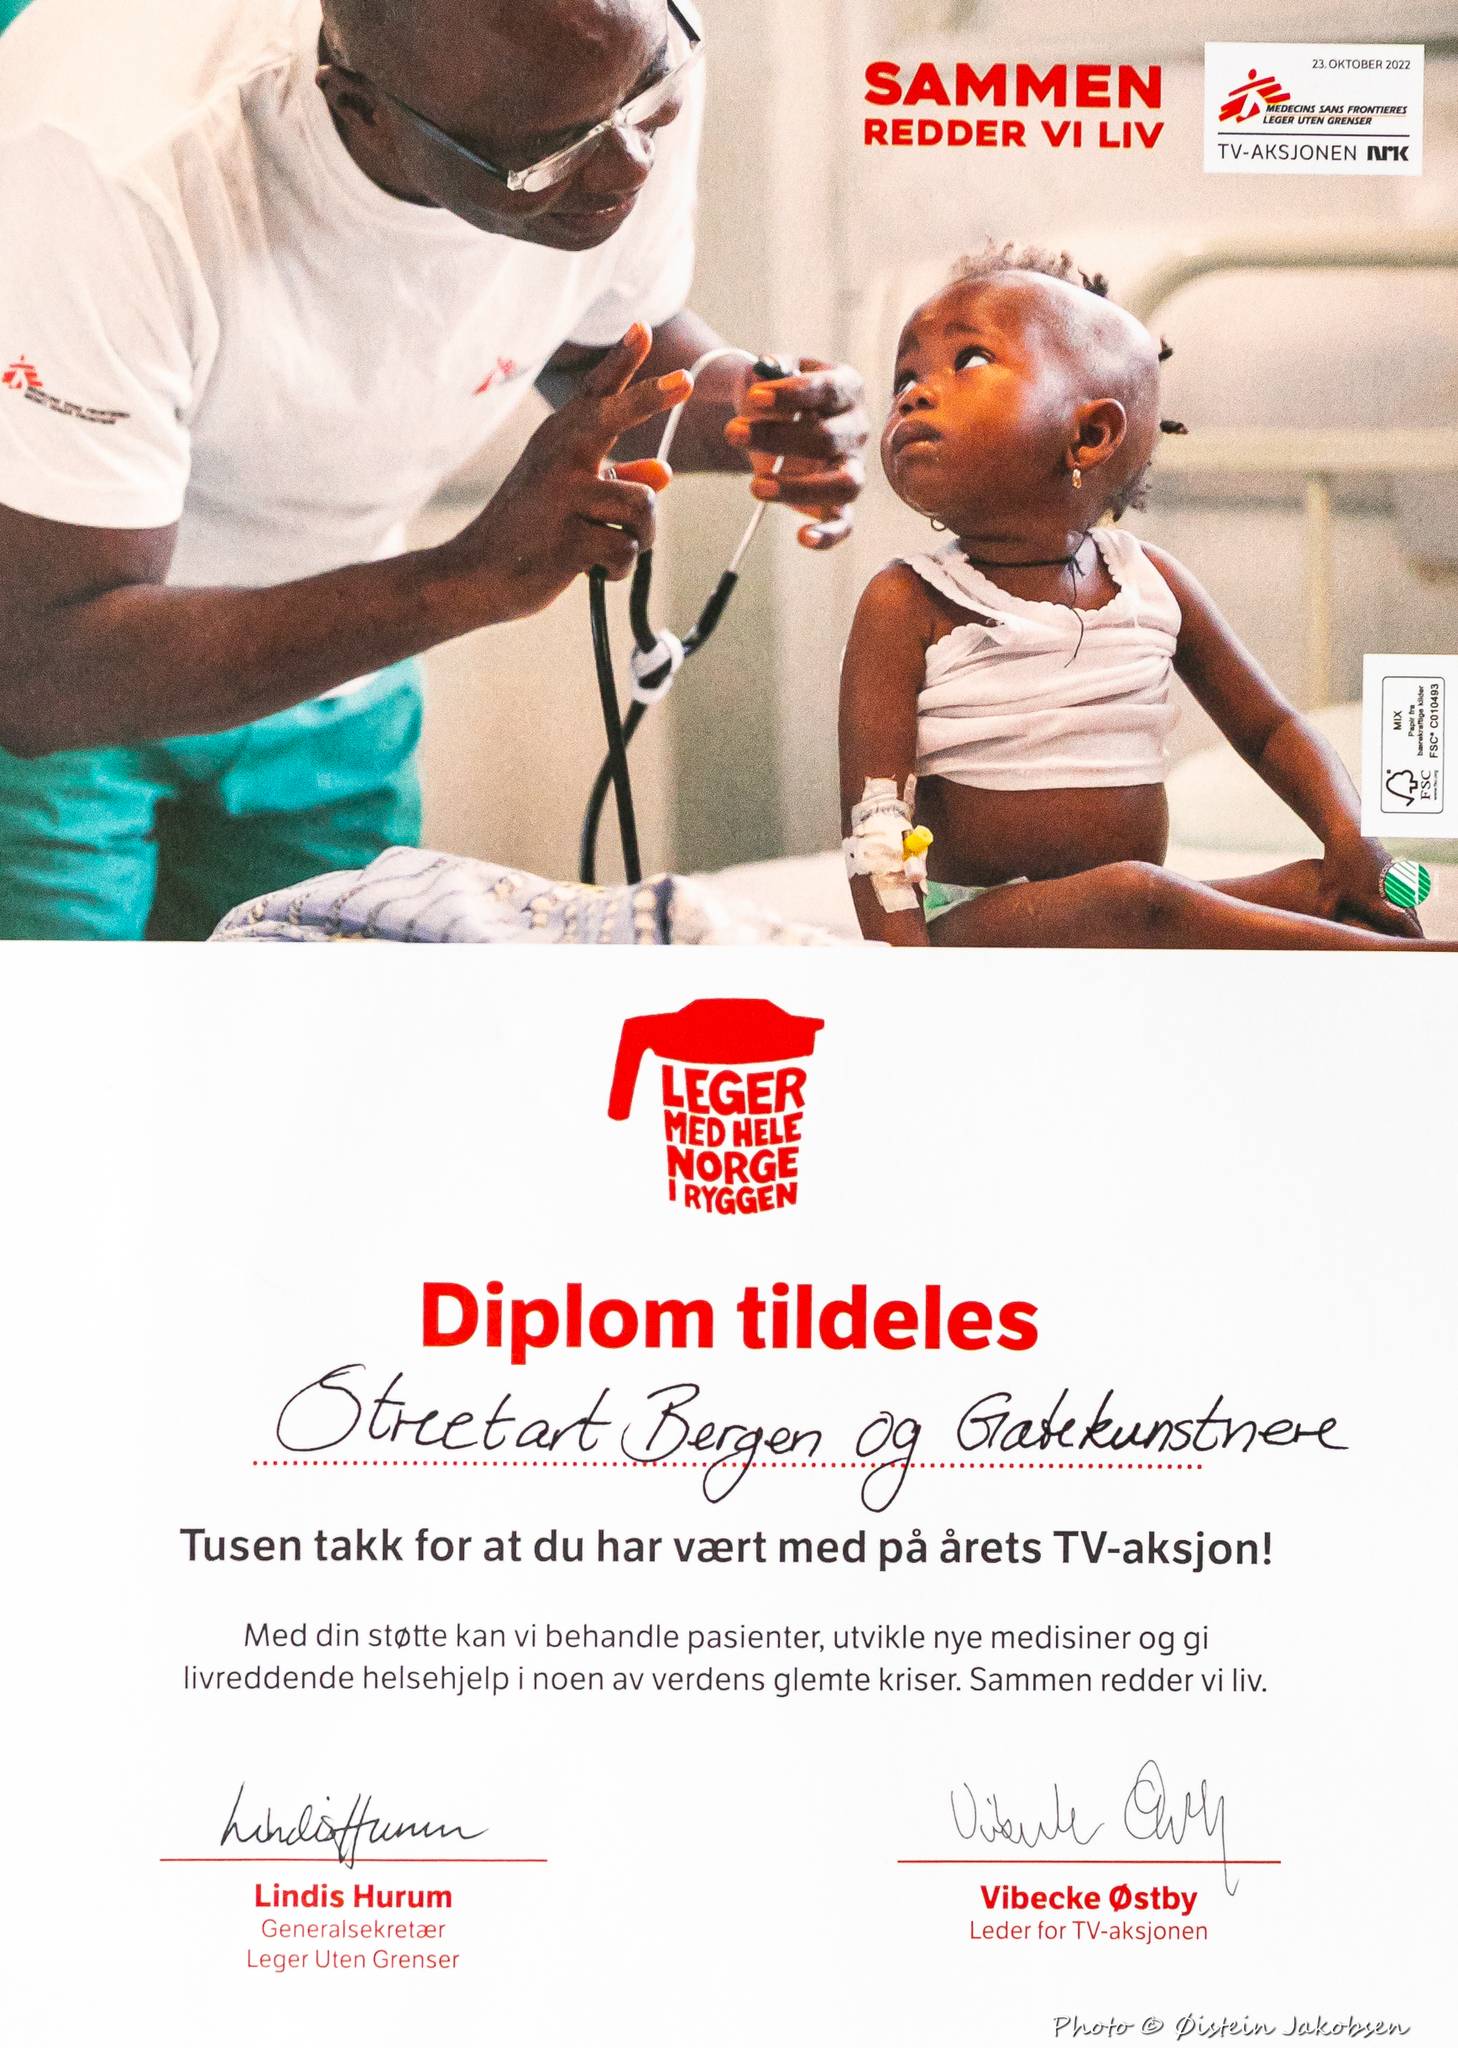 &mdash;MSF - Médecins Sans Frontières